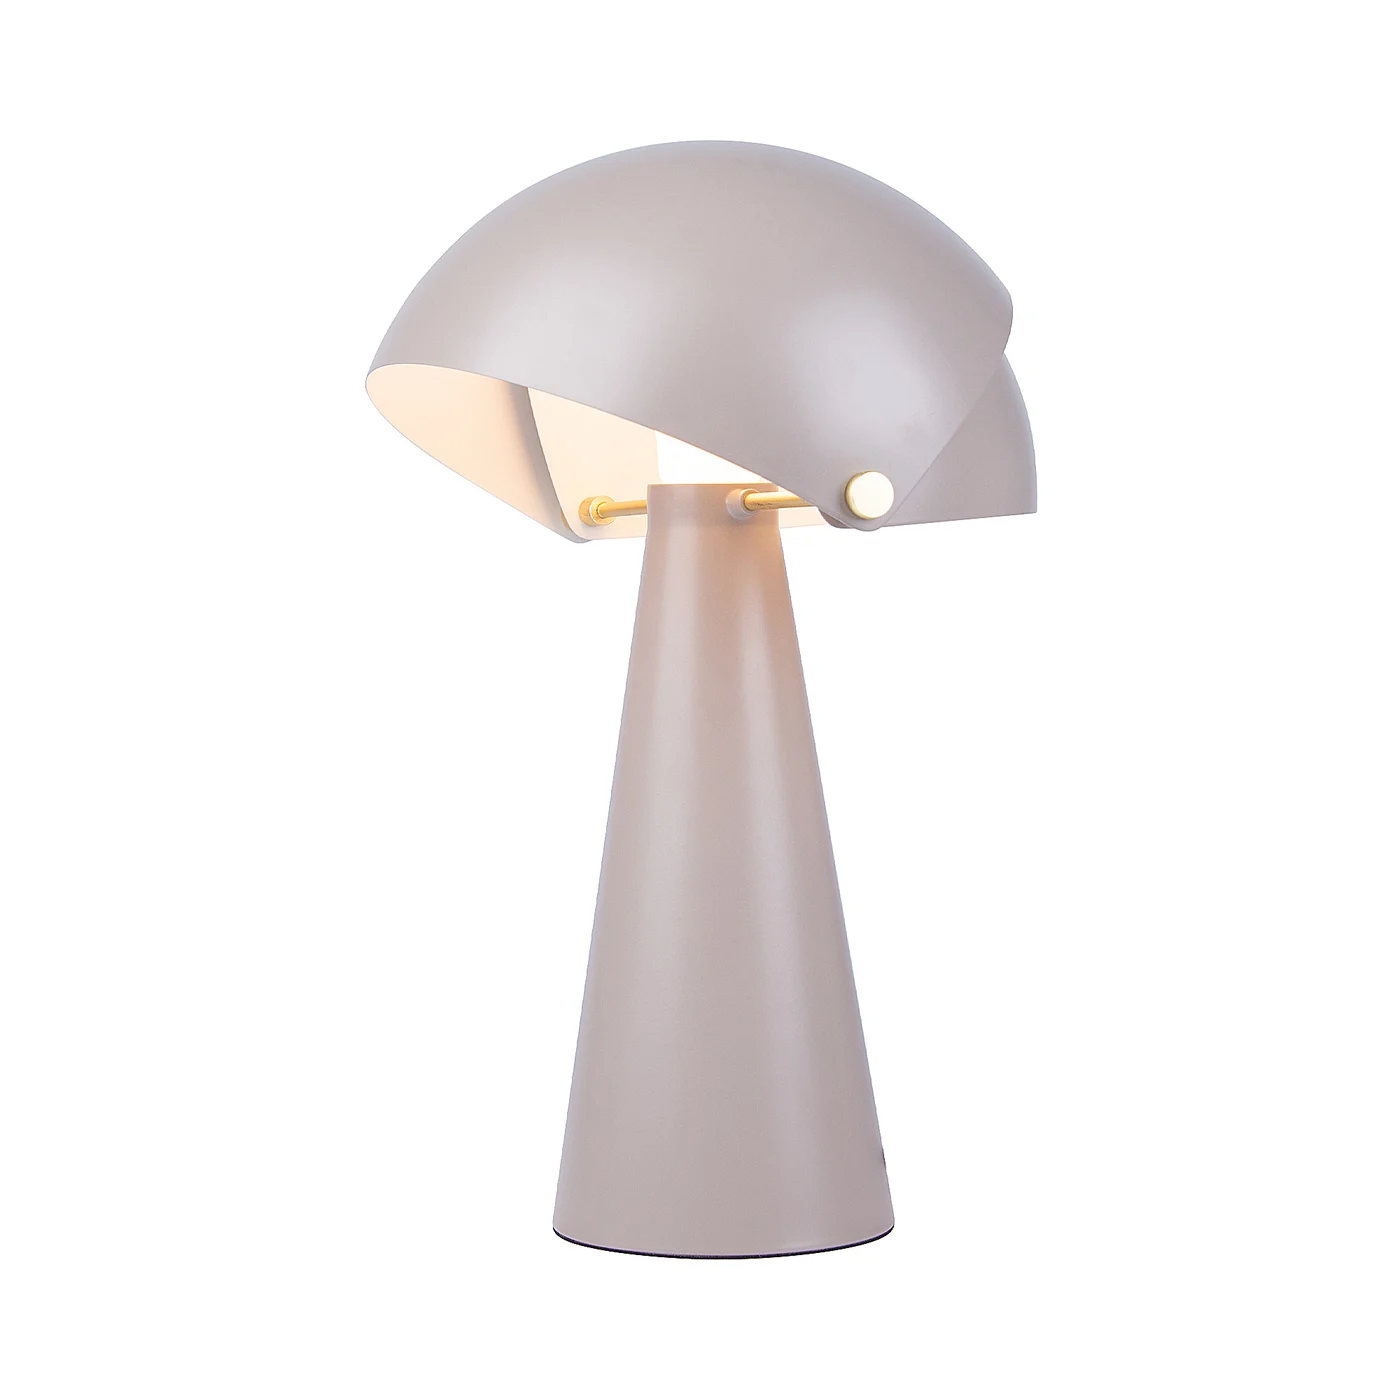 Originální stolní svítidlo Align od Nordluxu v matném sametovém provedení s detaily z broušené mosazi. Stínítko lampy je složeno z vnitřního statického a vnějšího pohyblivého, které si můžete uzpůsobit podle Vašich potřeb. Vyberte si z 8 barevných variant.